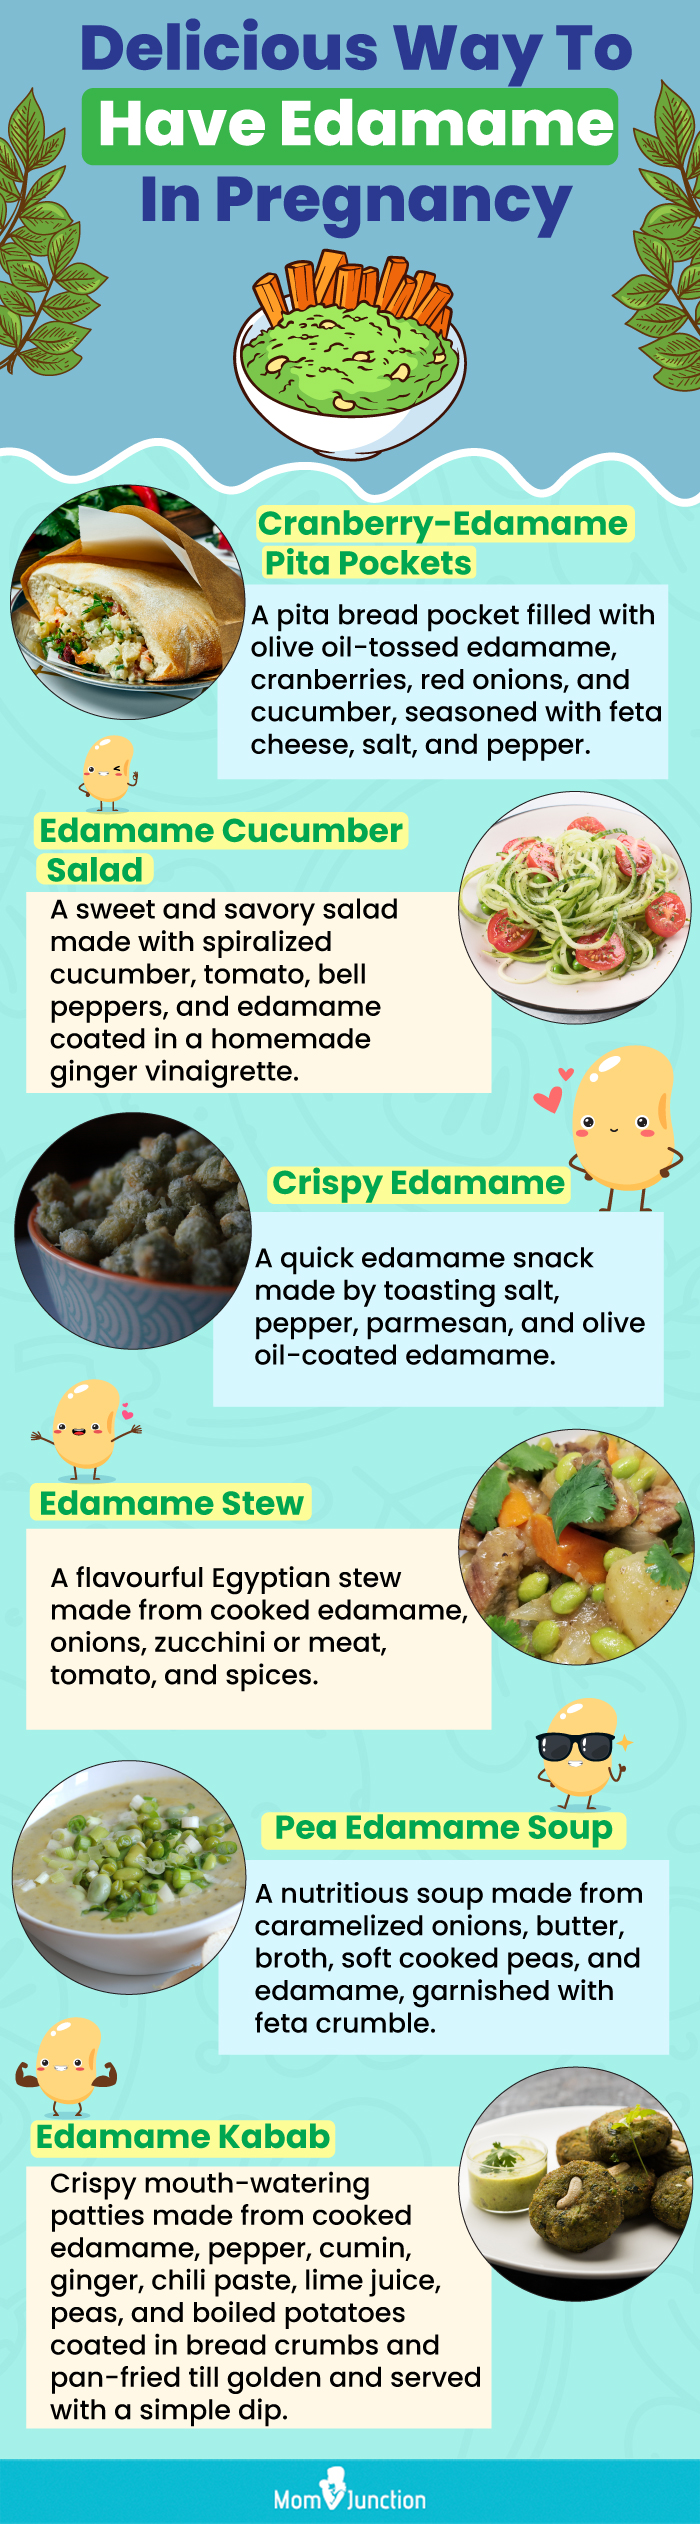 怀孕期间吃毛豆的美味方法(信息图)